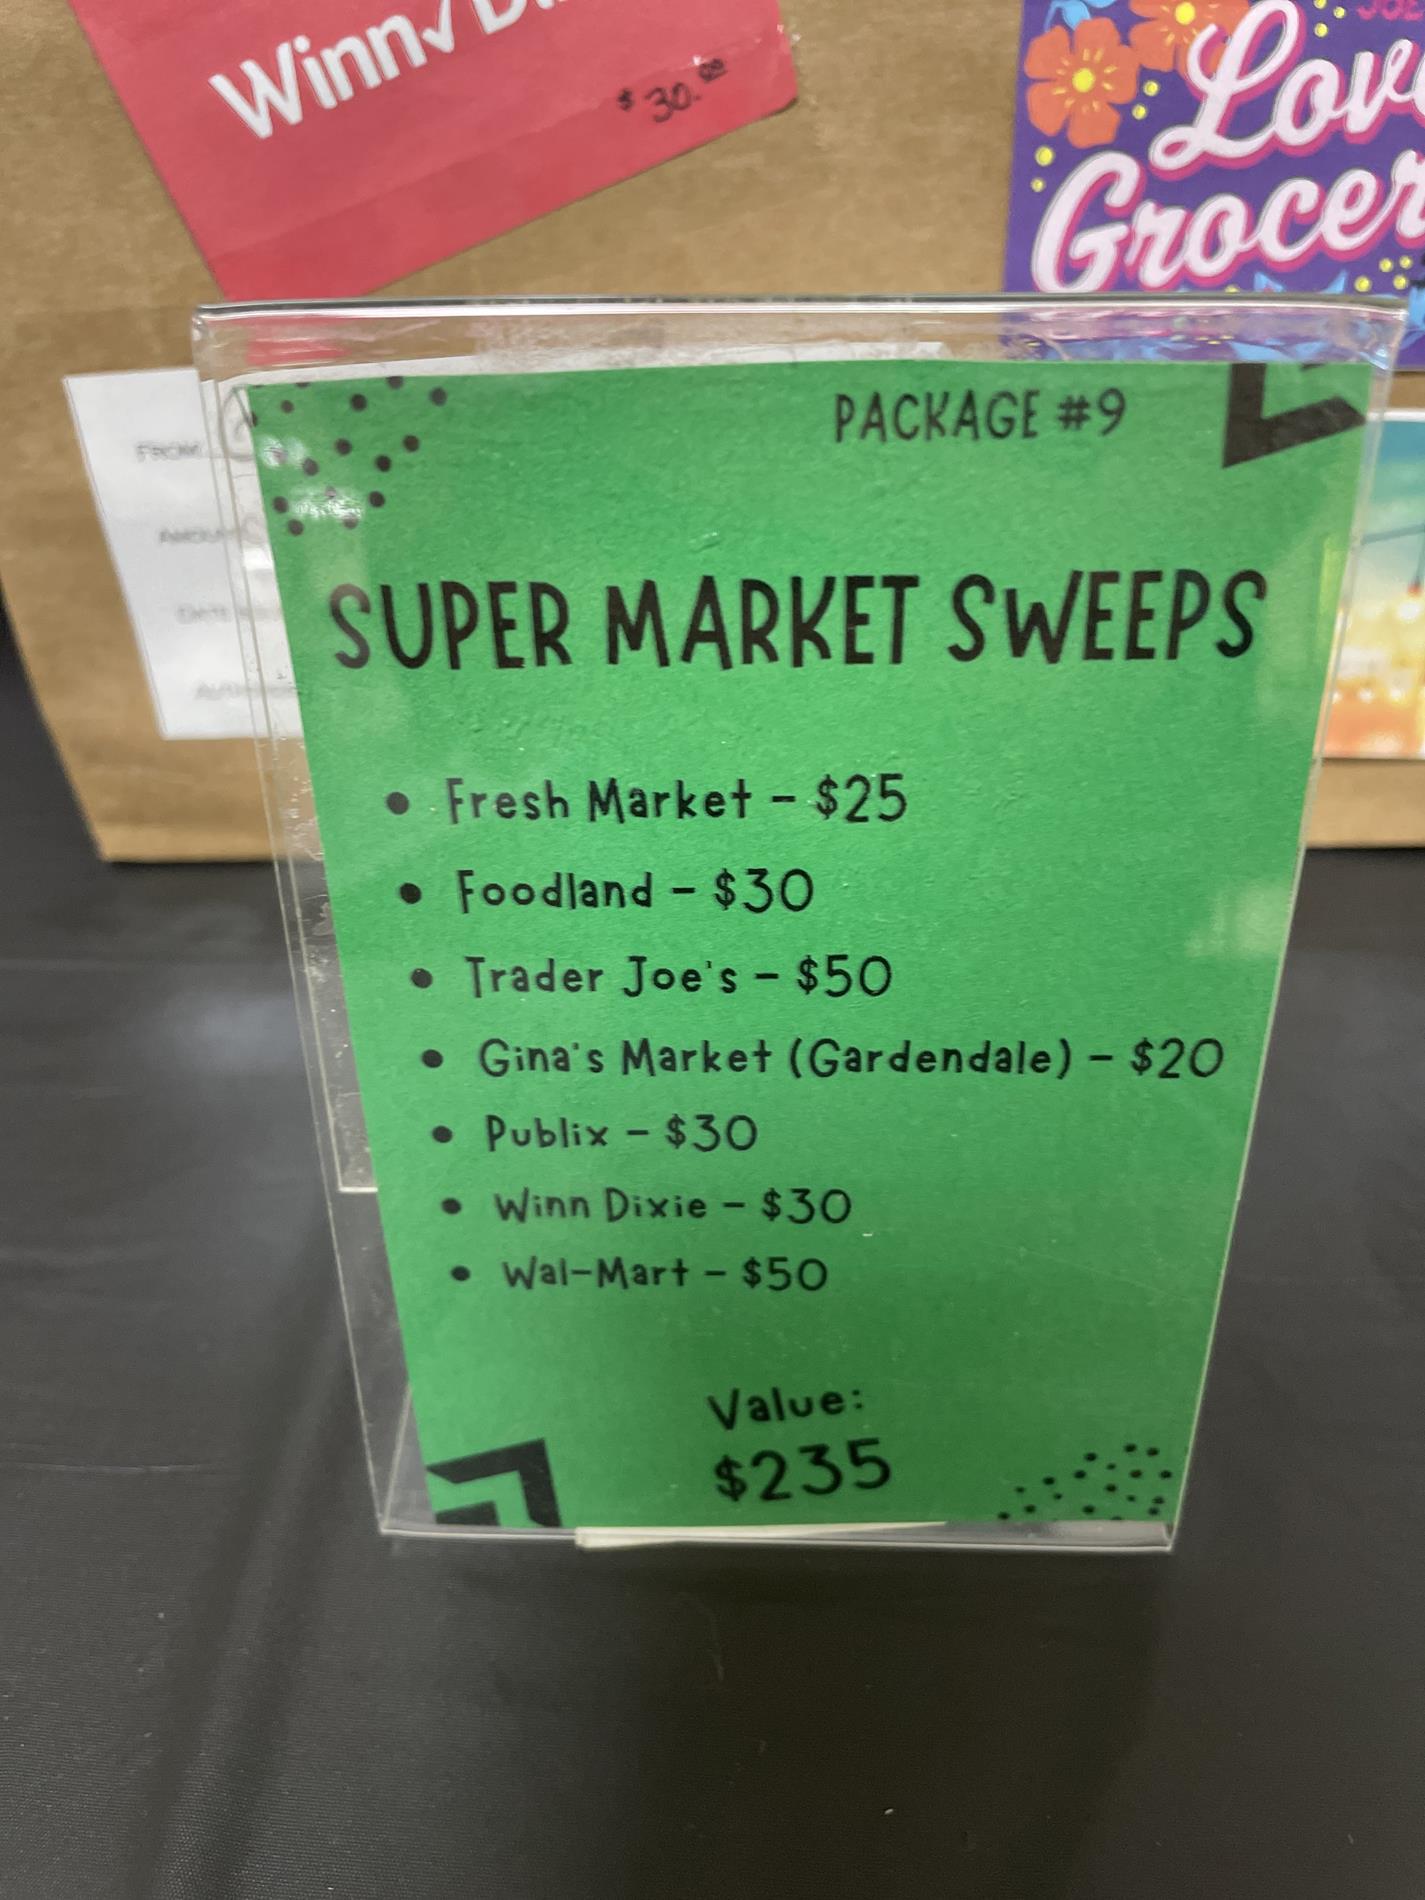 Auction Item #9: Super Market Sweeps